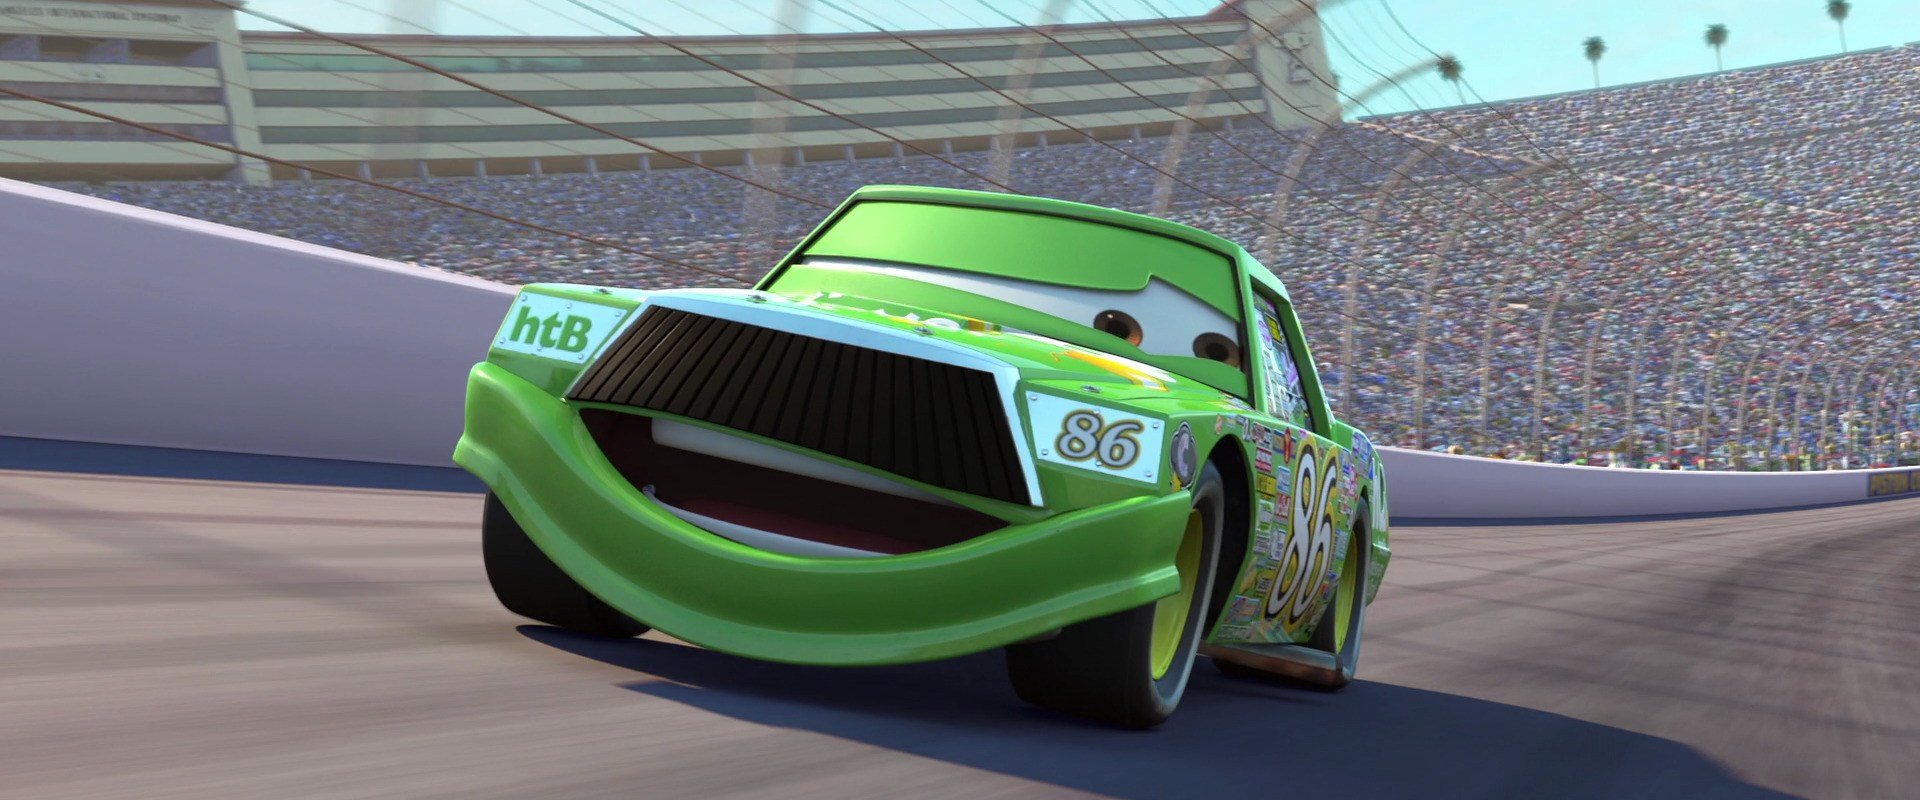 Cars. (Dok. Pixar)